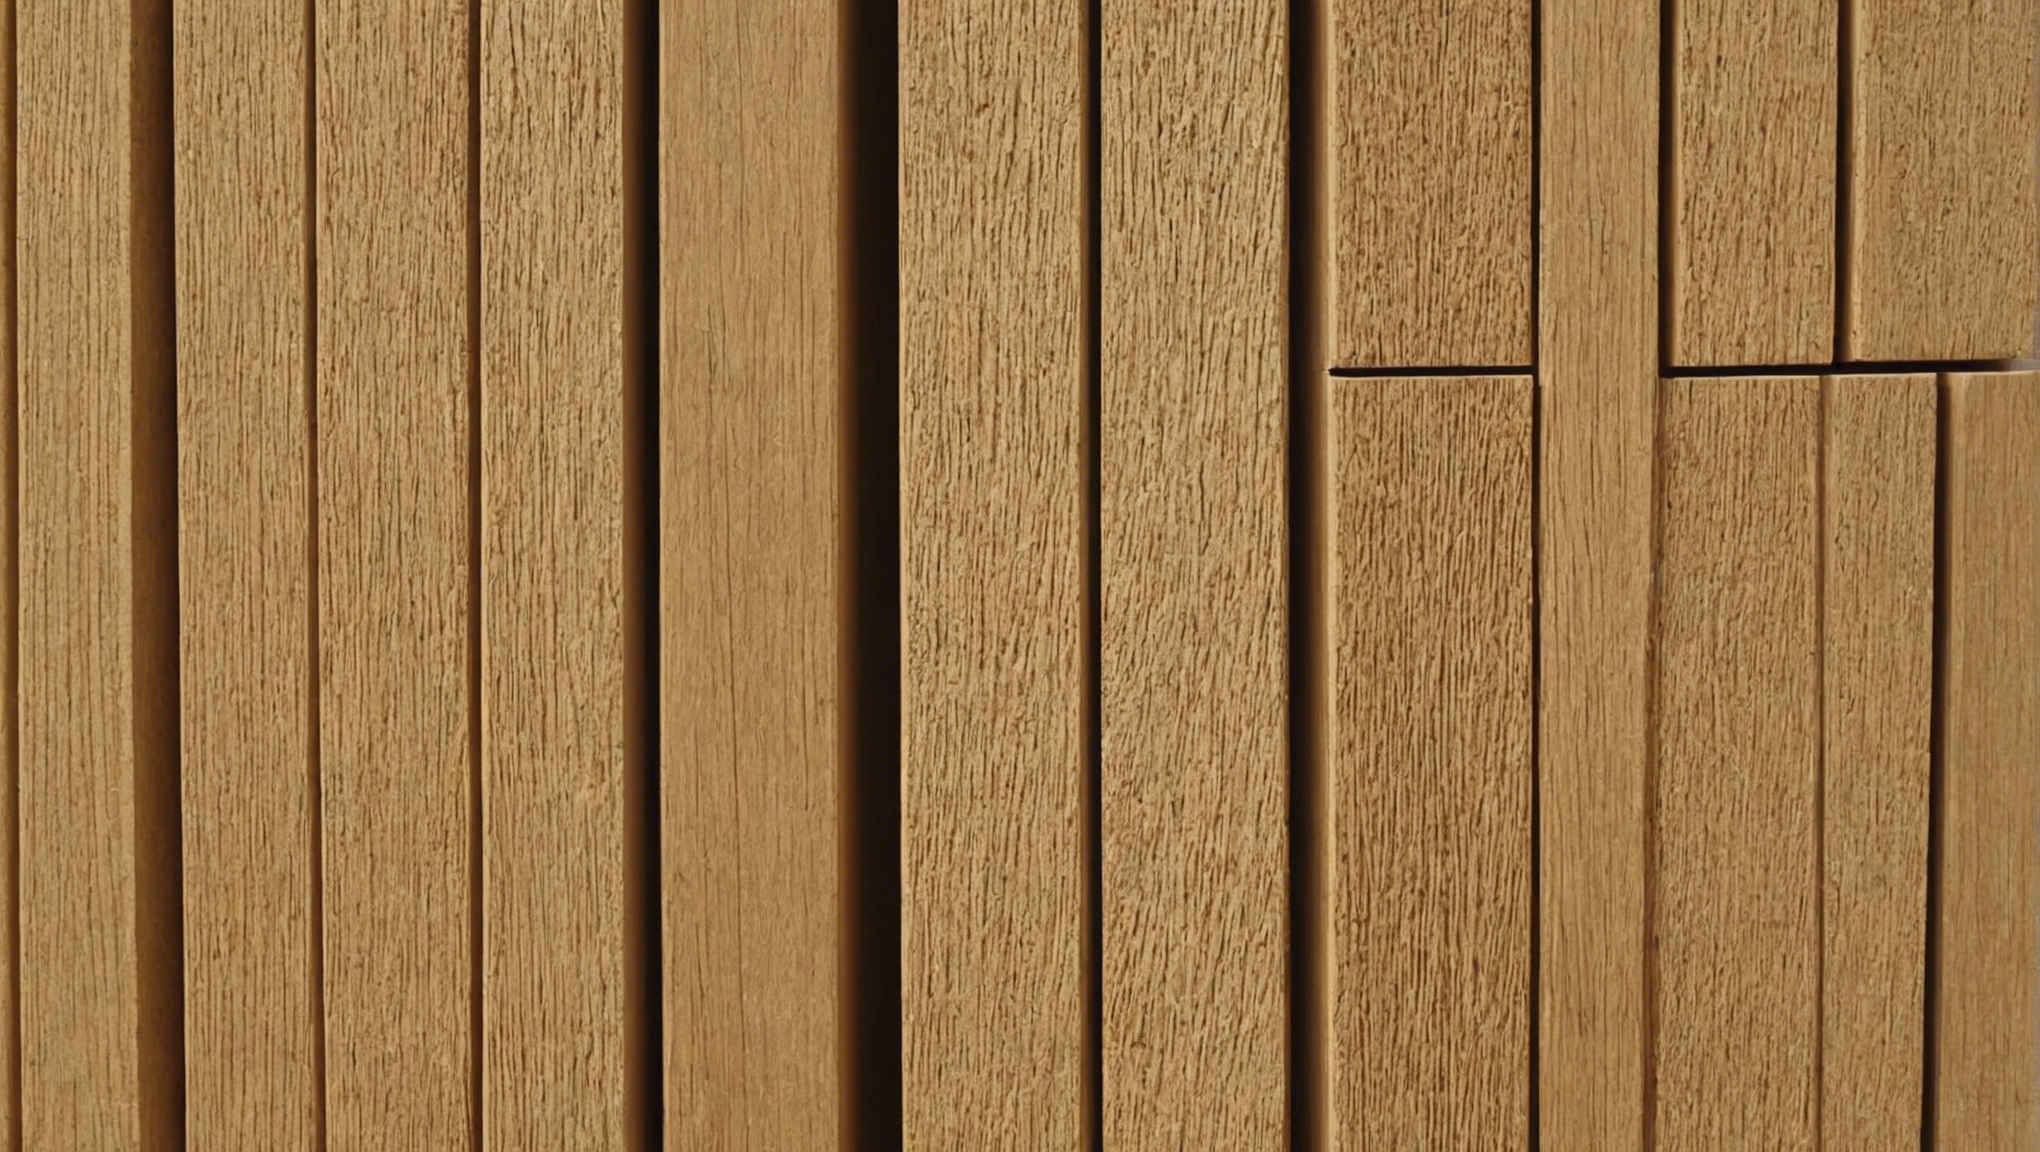 découvrez notre gamme de panneaux isolants en fibre de bois, la solution écologique et performante pour l'isolation de vos bâtiments.